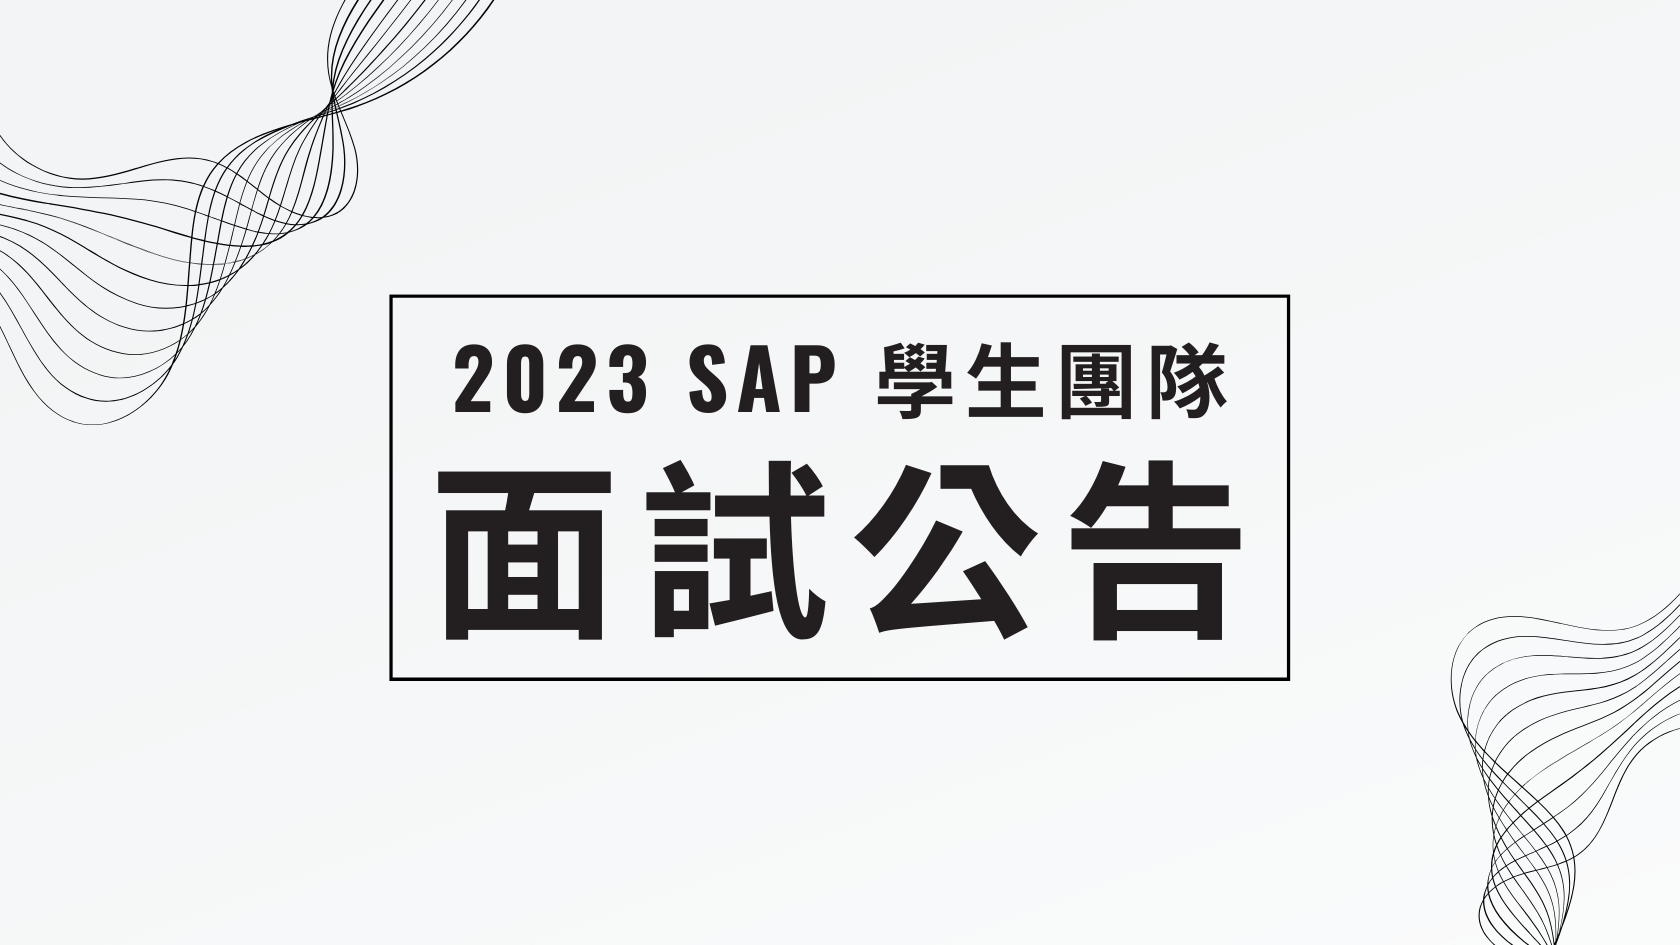 閱讀有關文章的更多信息 2023 SAP學生團隊面試公告